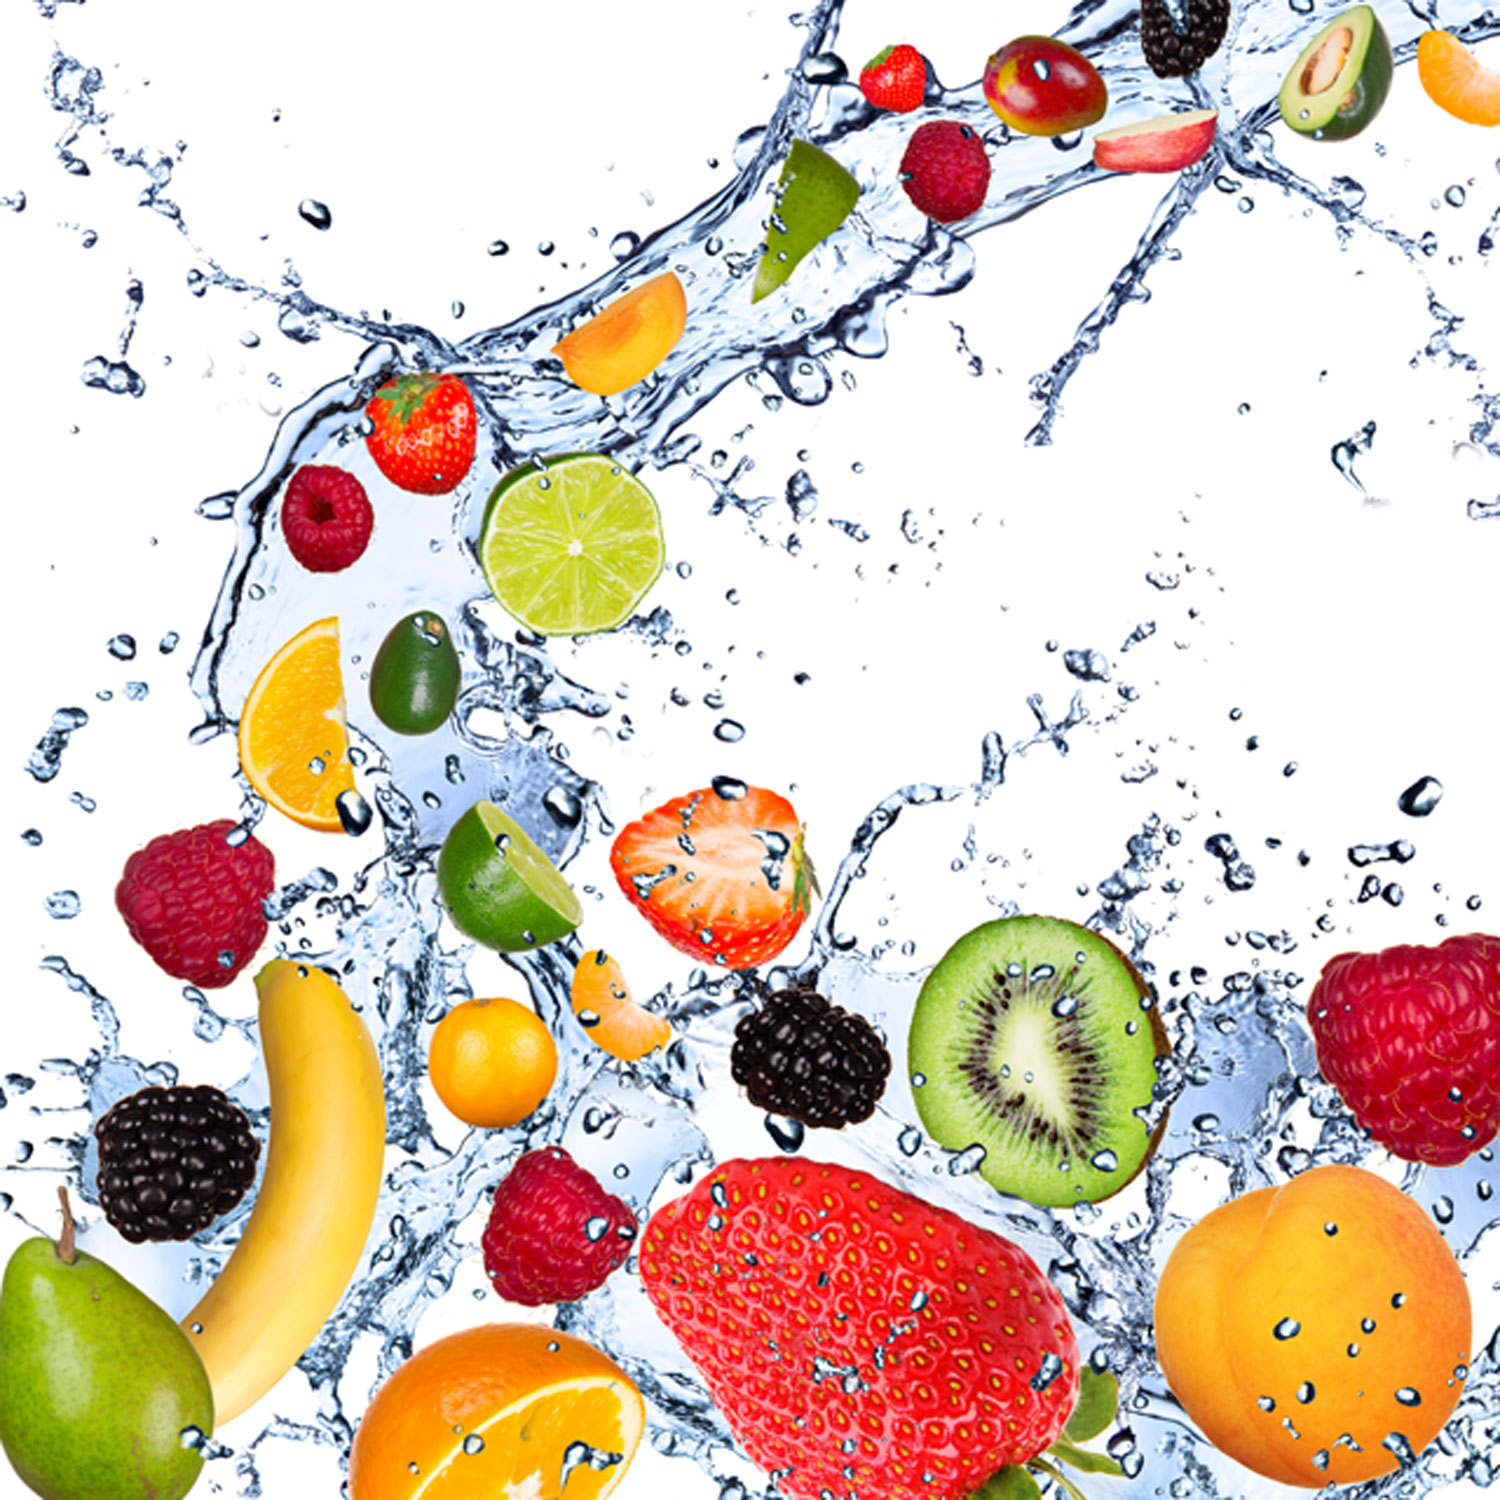 17 alimentos que hidratan para comer cuando hace calor